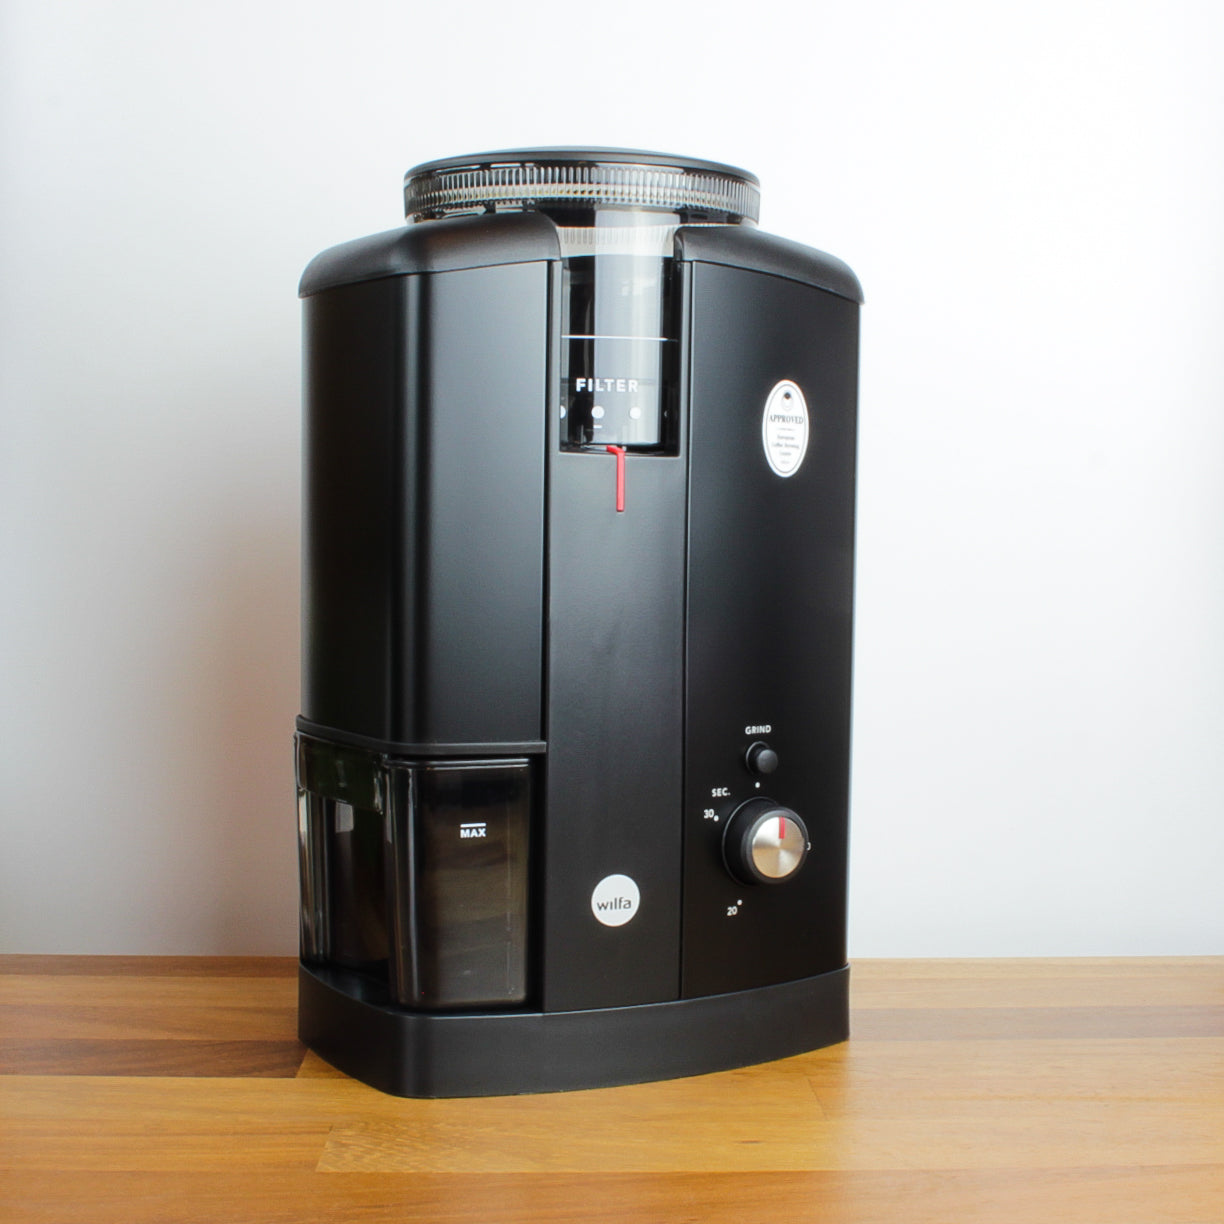 Wilfa coffee grinder